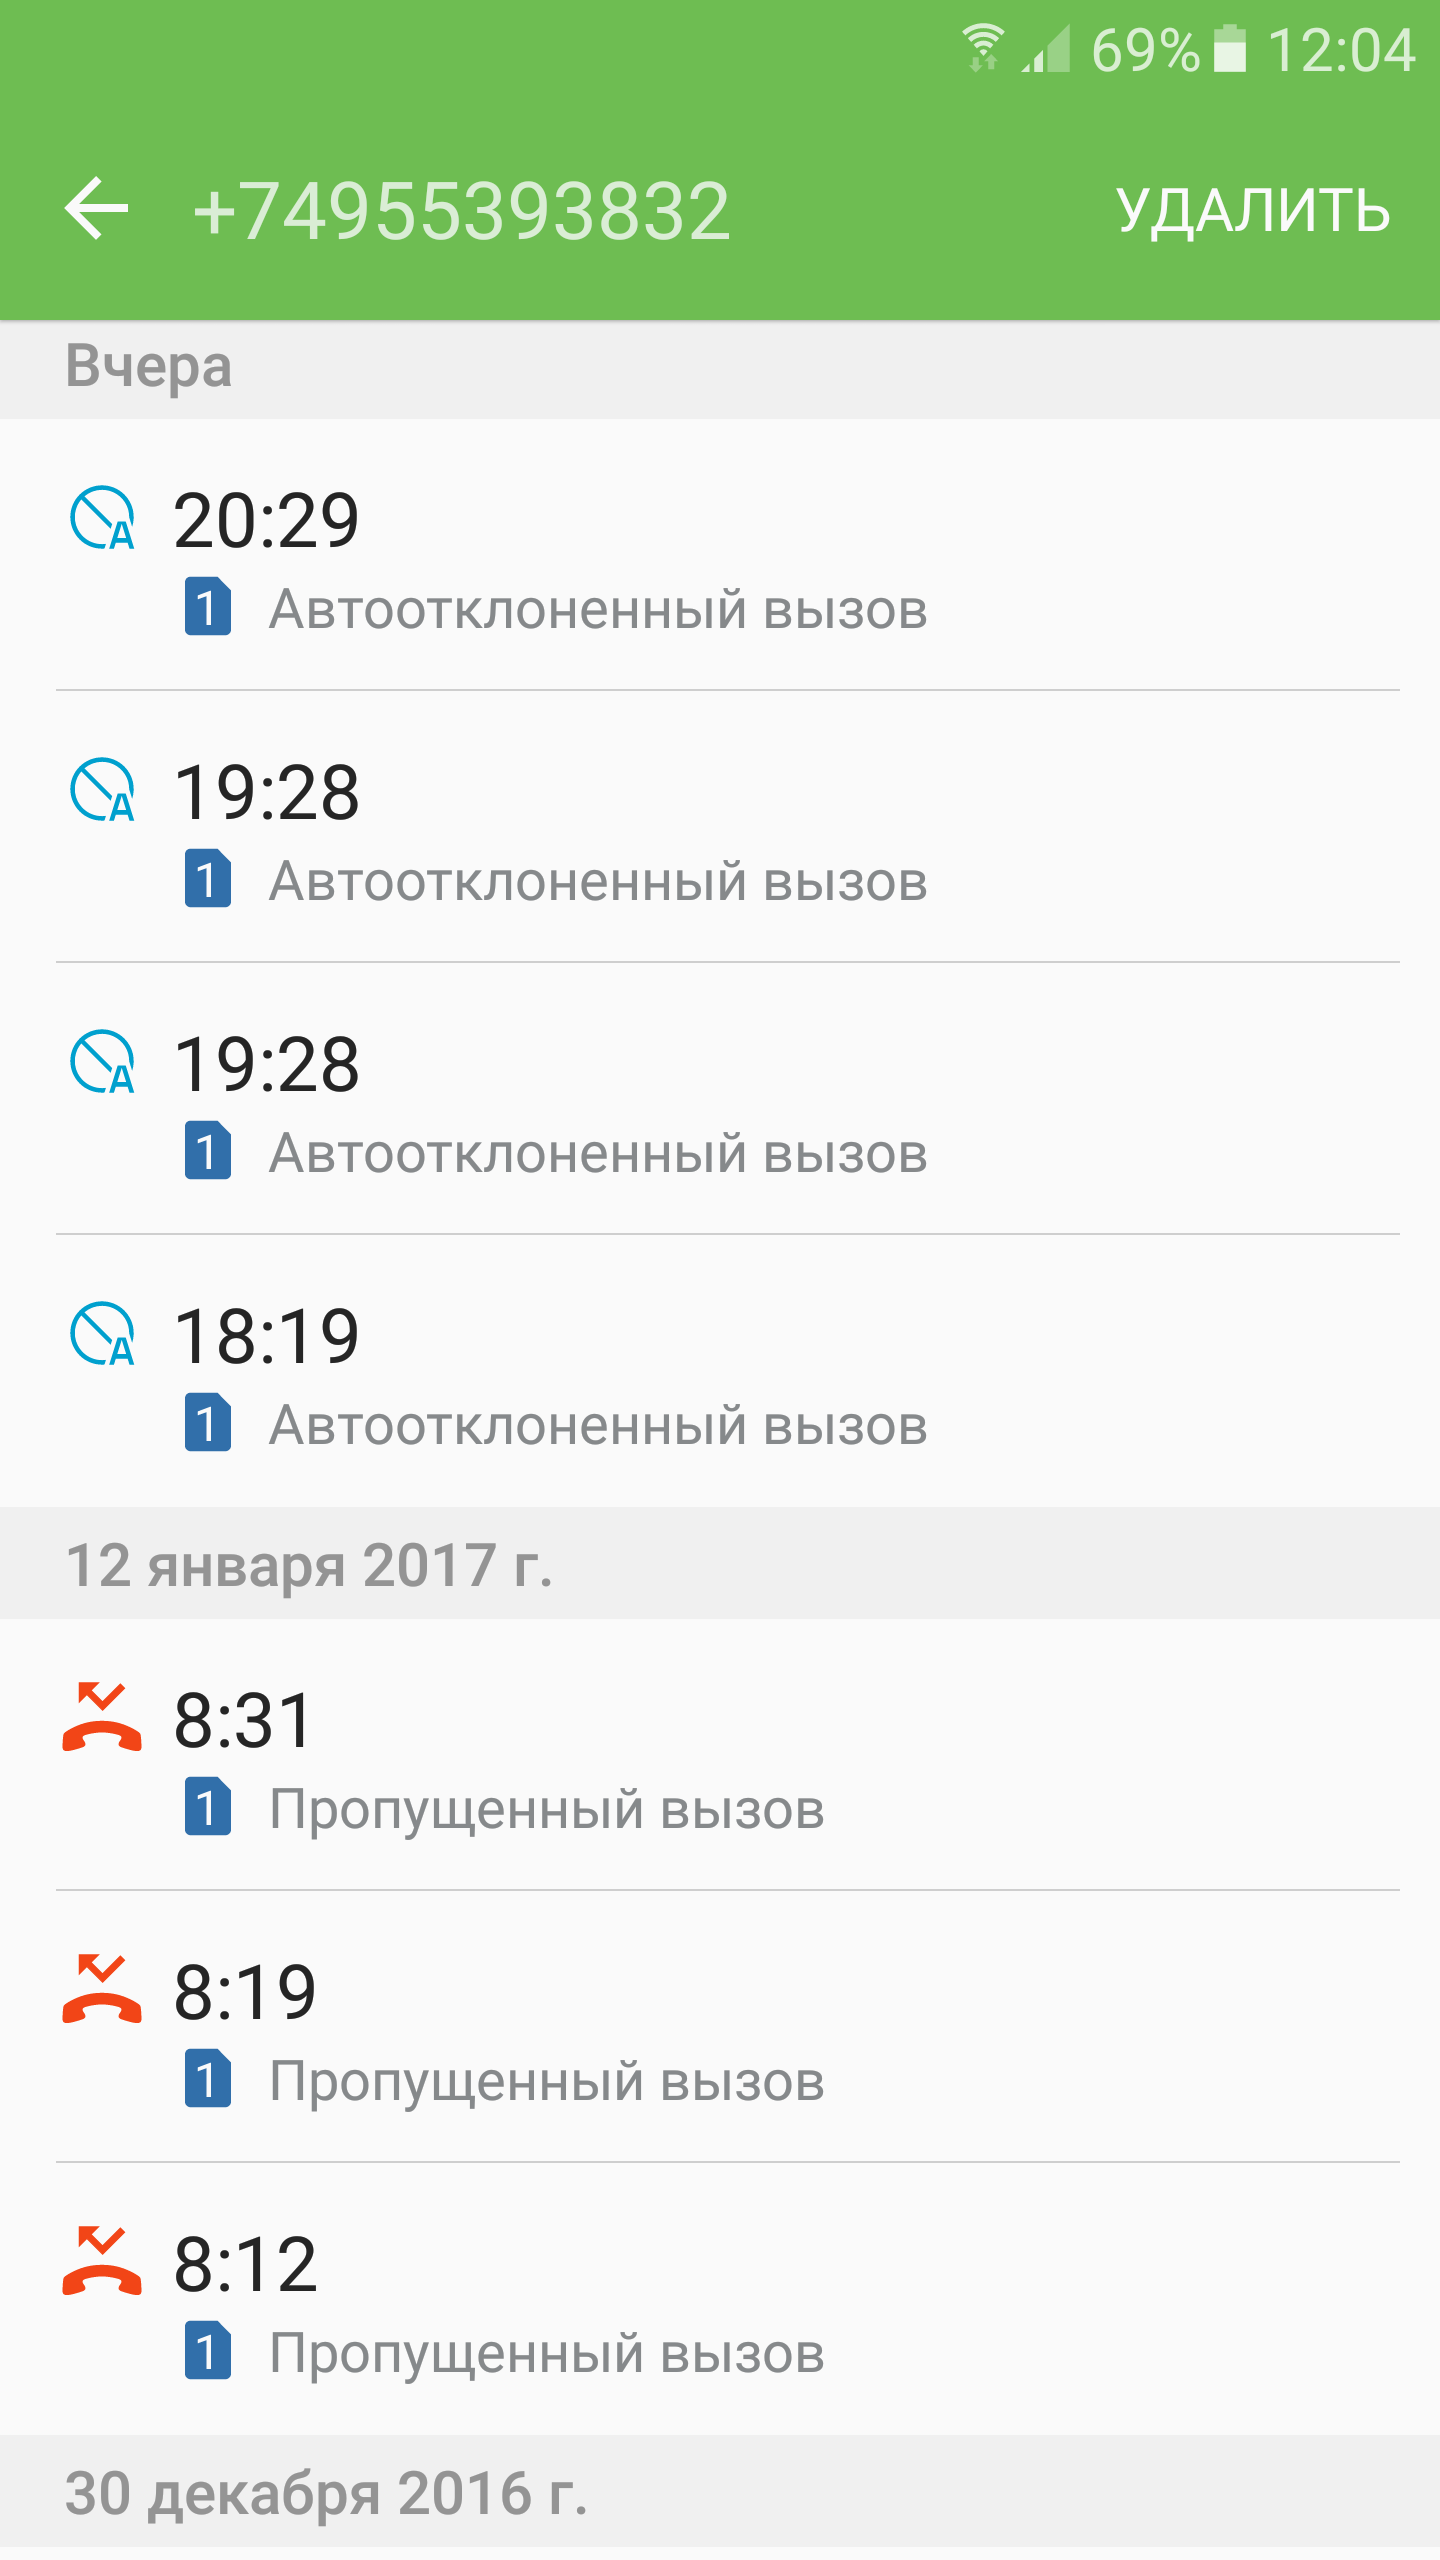 Саяногорск Инфо - screenshot_20170114-120419.png, Скачано: 546